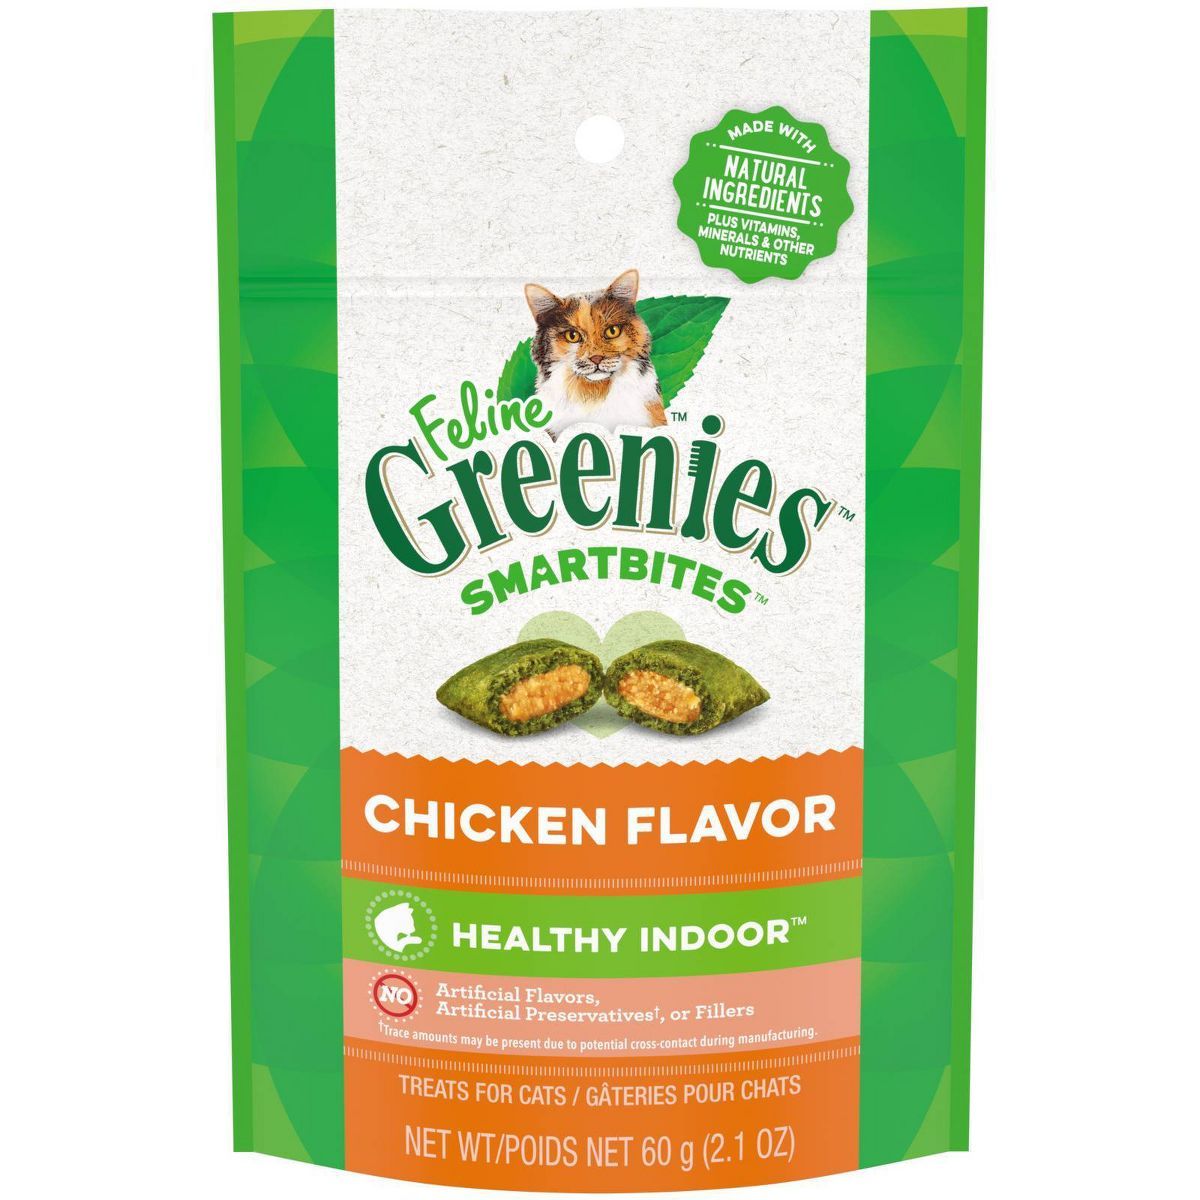 Greenies Smartbites Healthy Indoor Chicken Flavor Cat Treats | Target